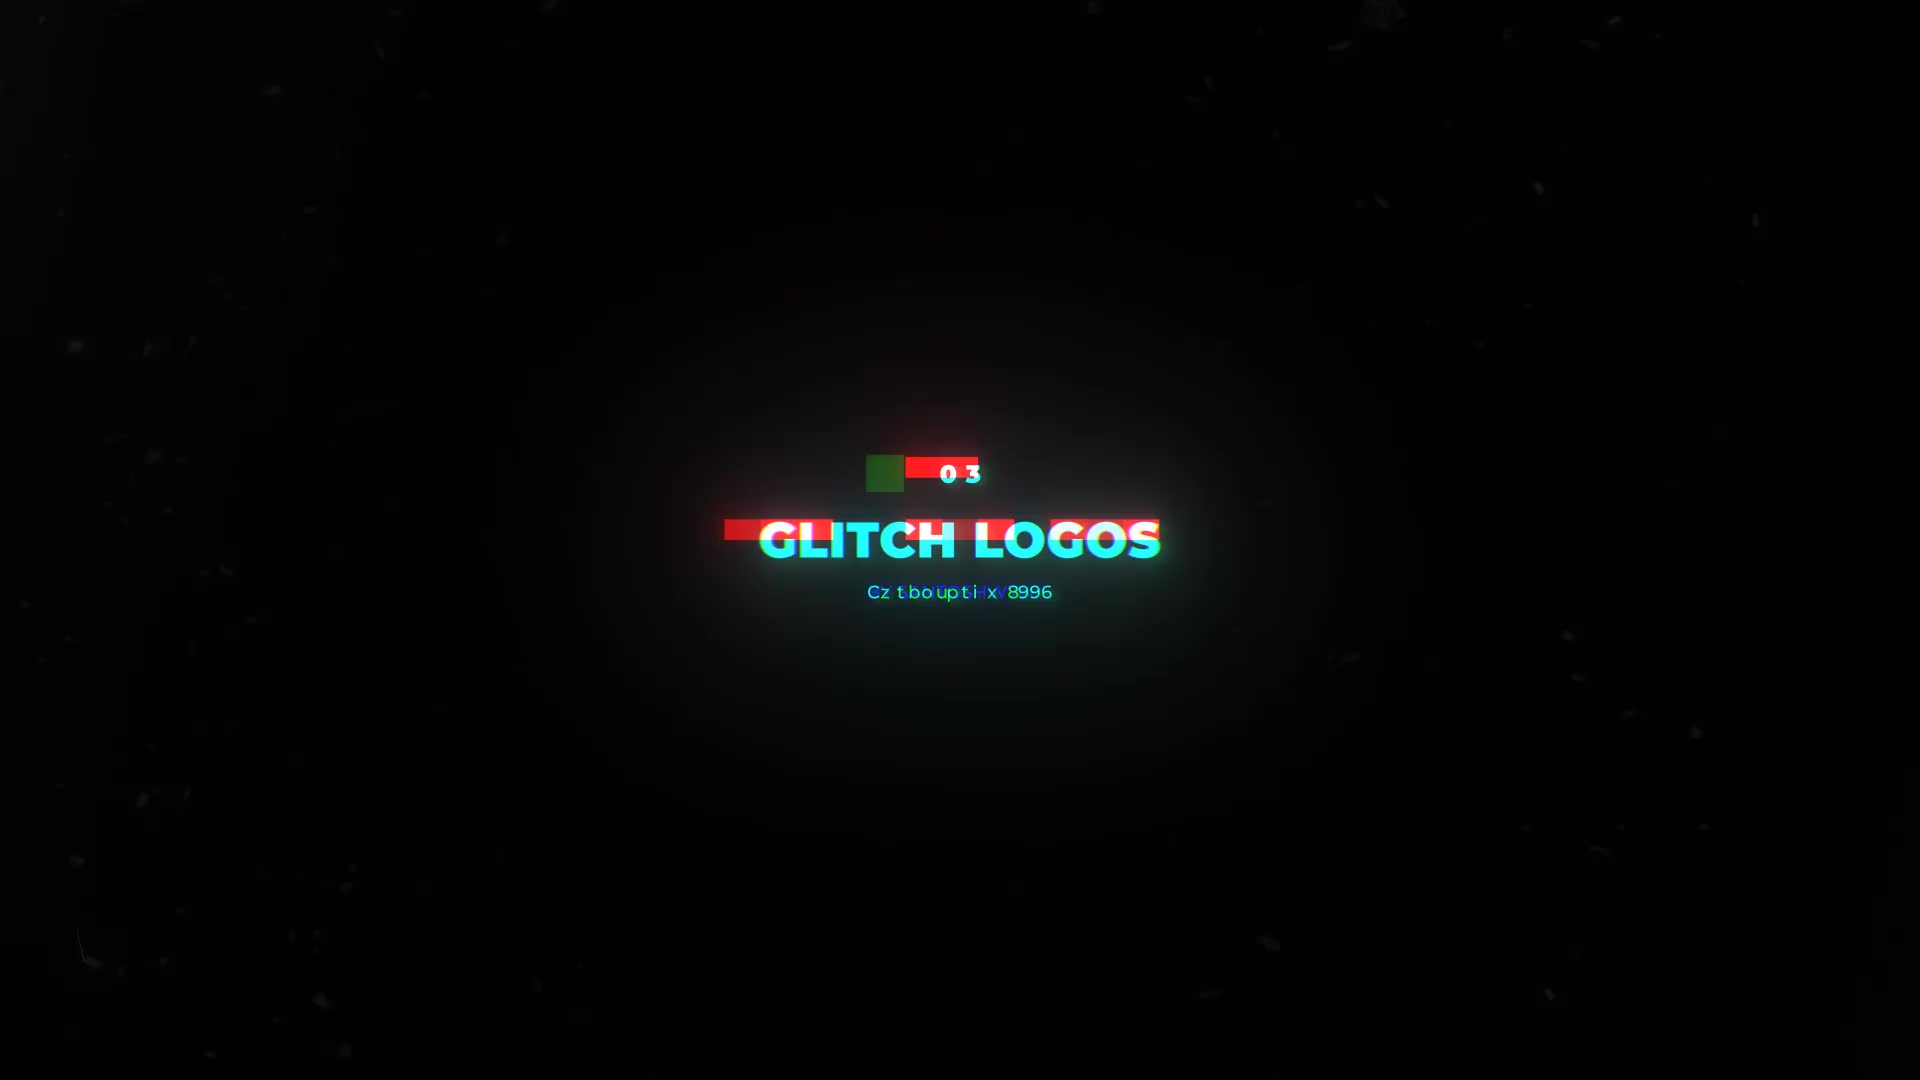 Glitch Logo 3 In 1 Mogrt Videohive 32090668 Premiere Pro Image 1